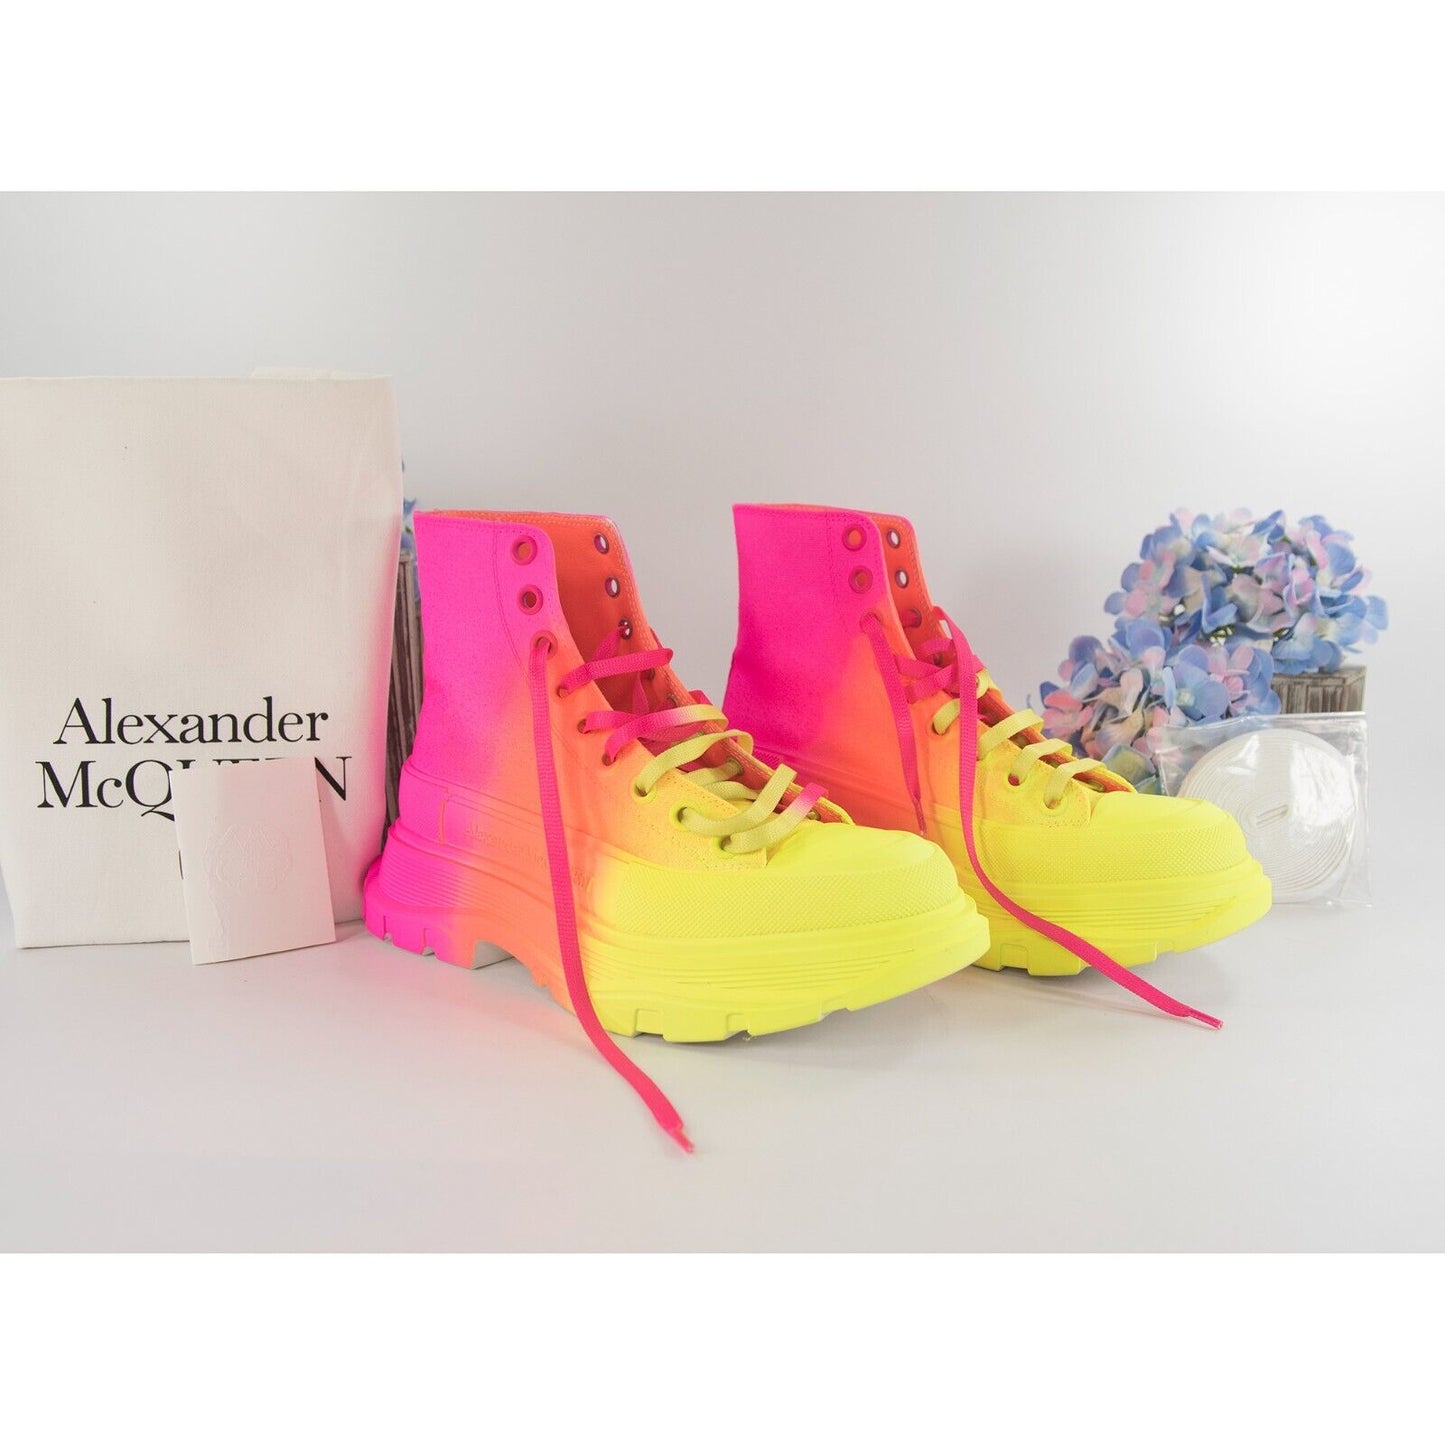 Alexander McQueen Lt Edition Tread Slick Neon Coated High Top Sneakers 37 NIB